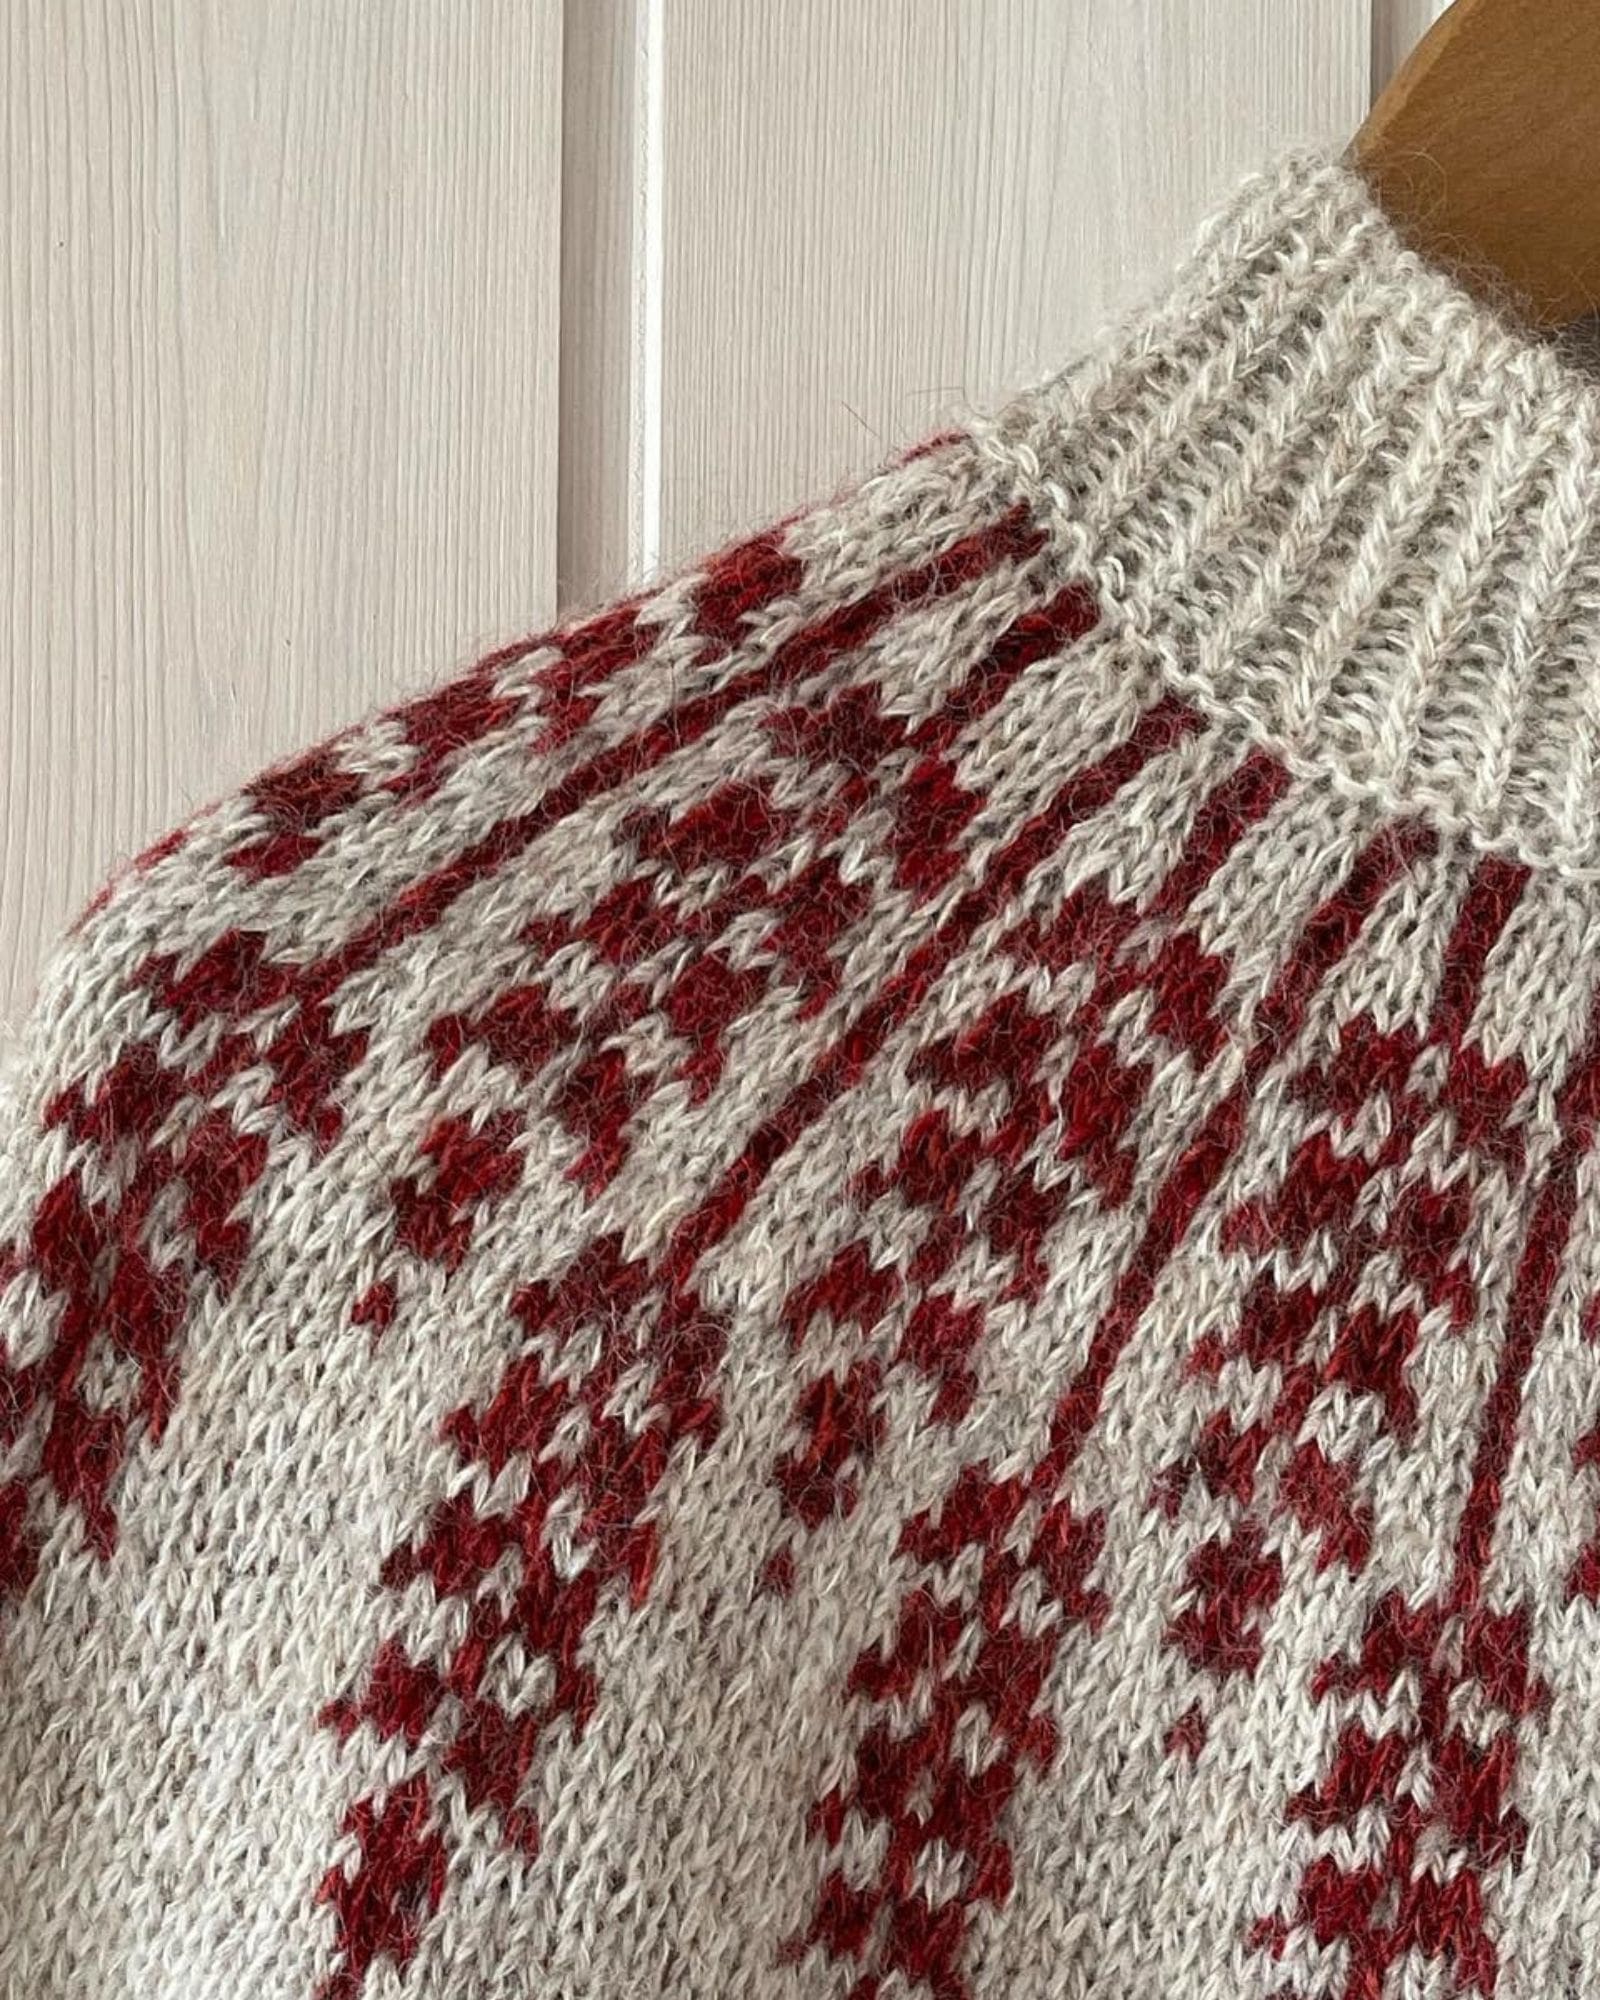 hanne-rimmen-lupin-sweater4